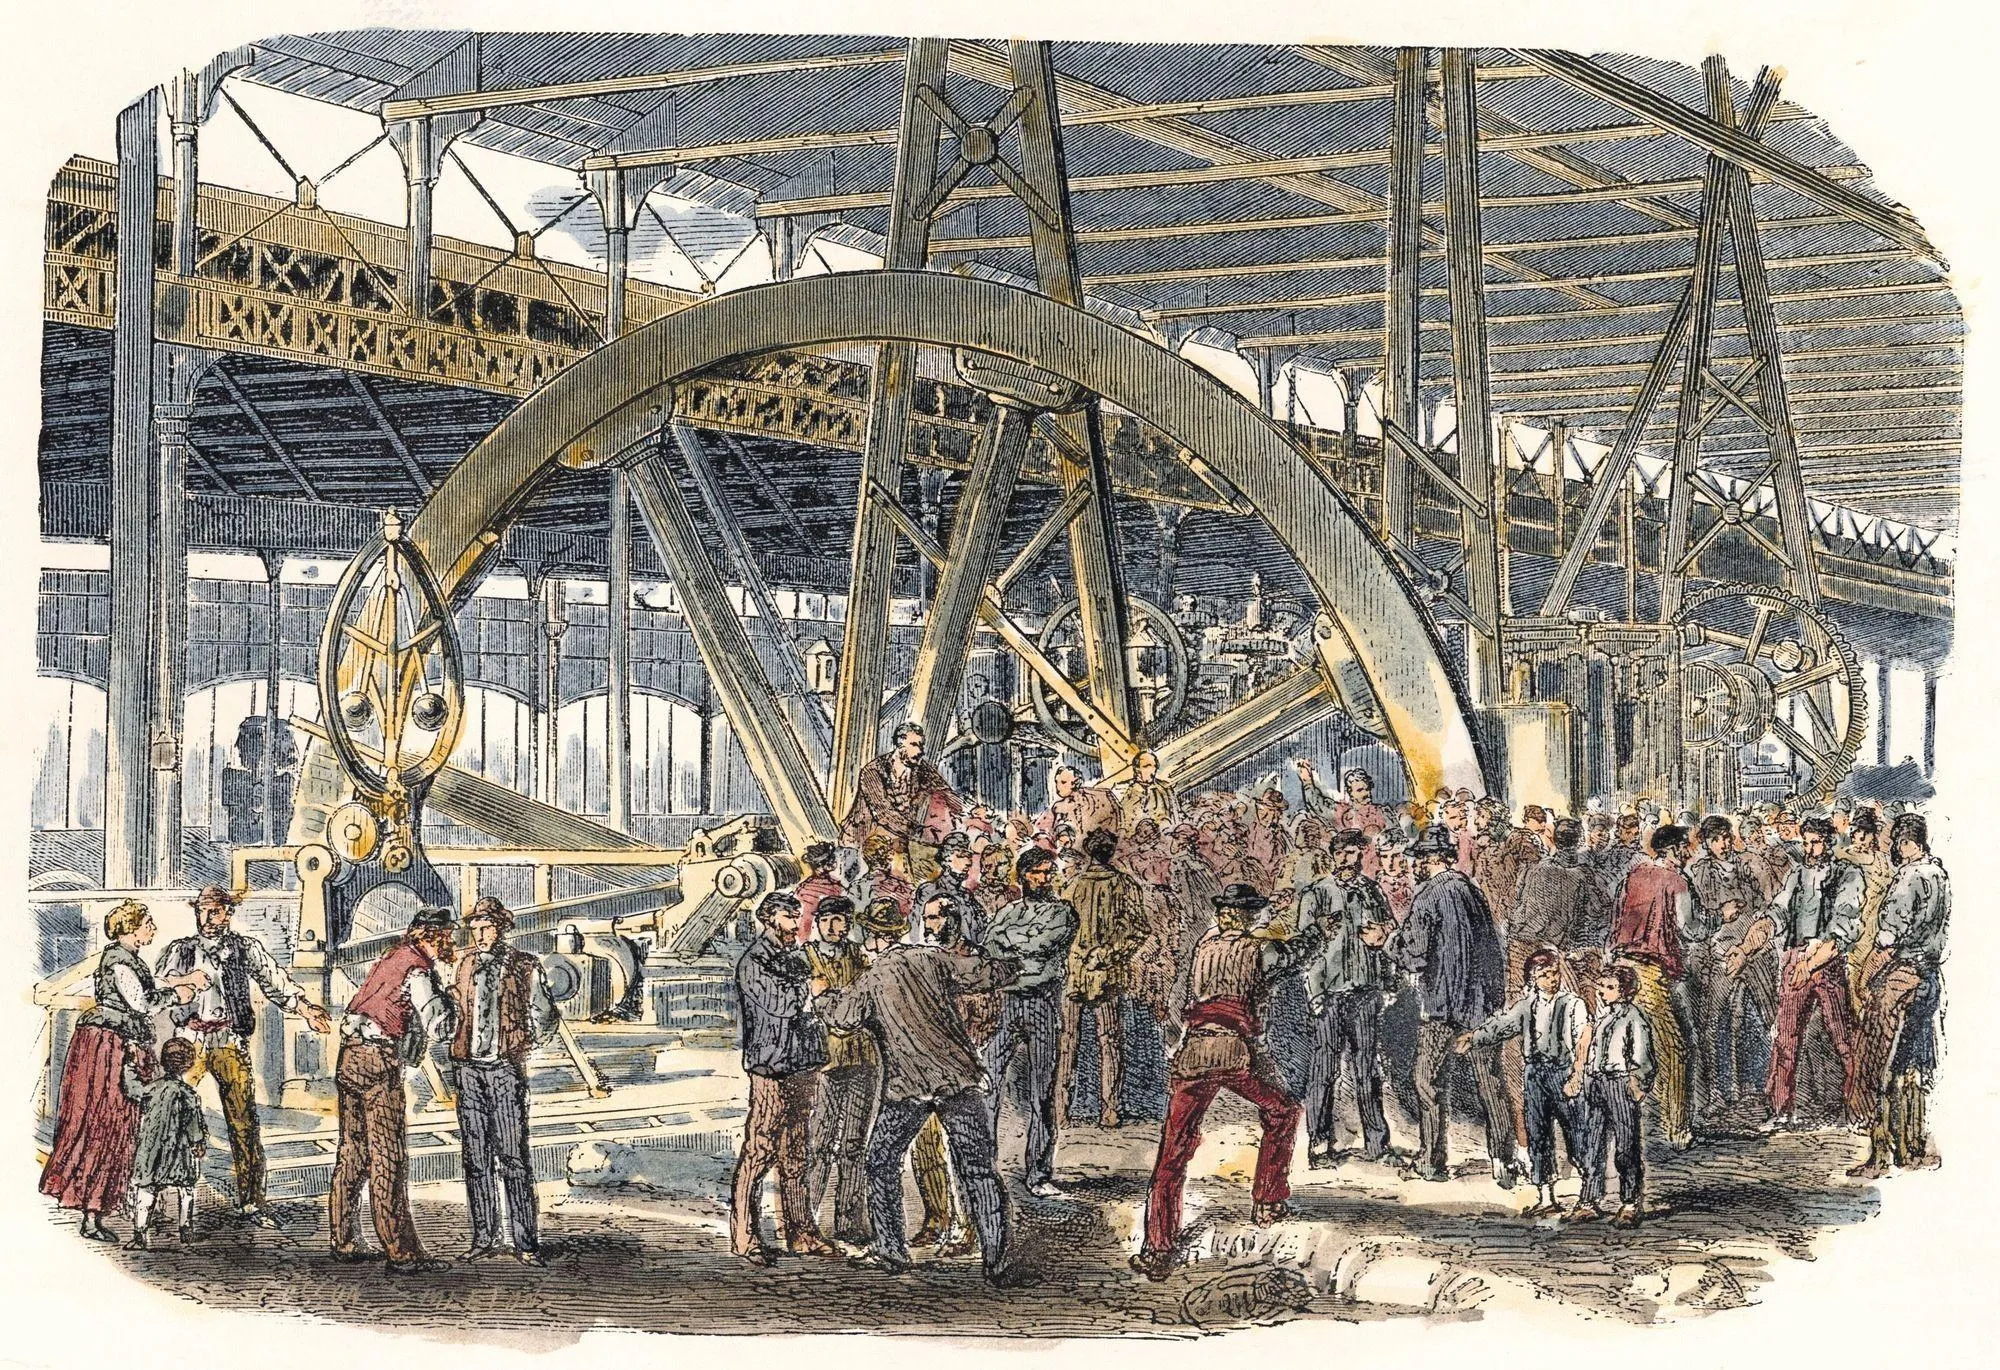 Anonyme, Grève des ouvriers du Creusot, 1870, gravure sur bois (coloriée plus tard).